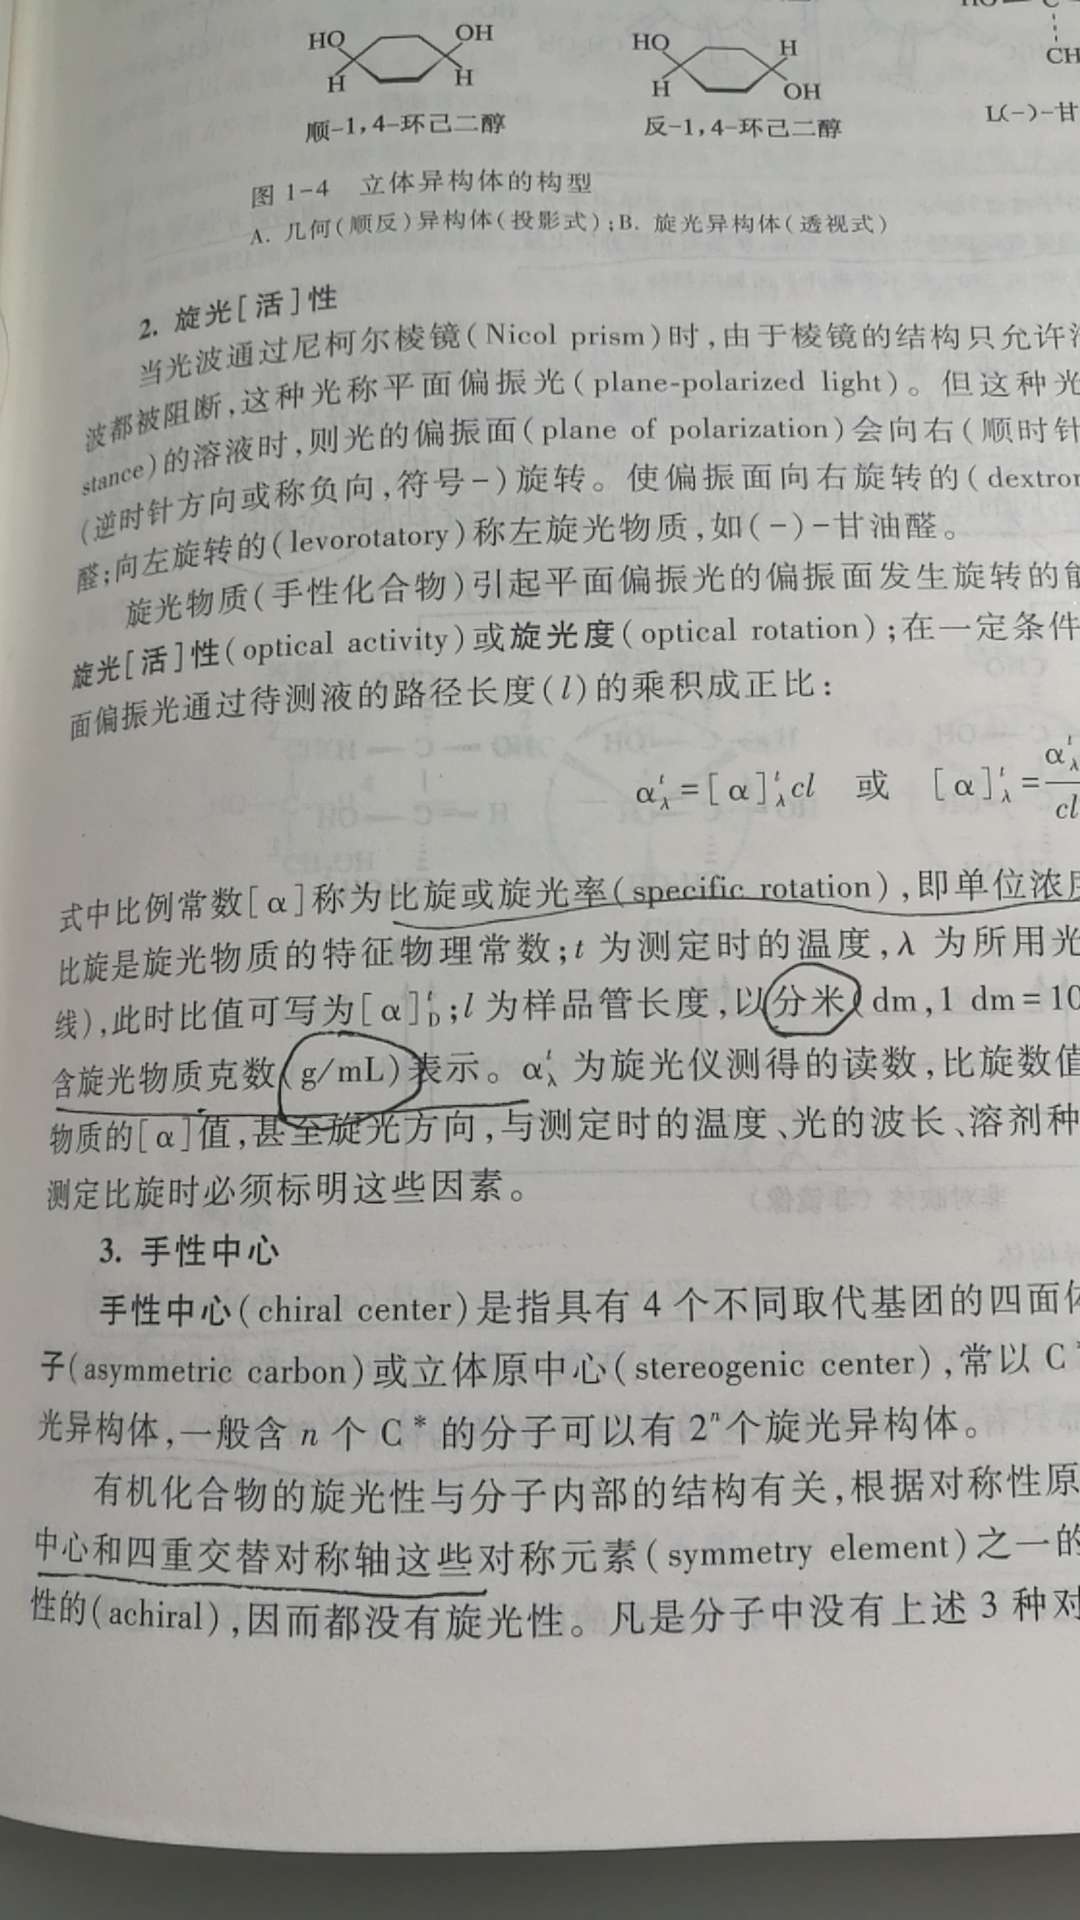 第一页就出现错误了，第二张图片上：公式也乱标单位，然后第三张图片是生物化学教材书上的原话。 误人子弟啊真的是